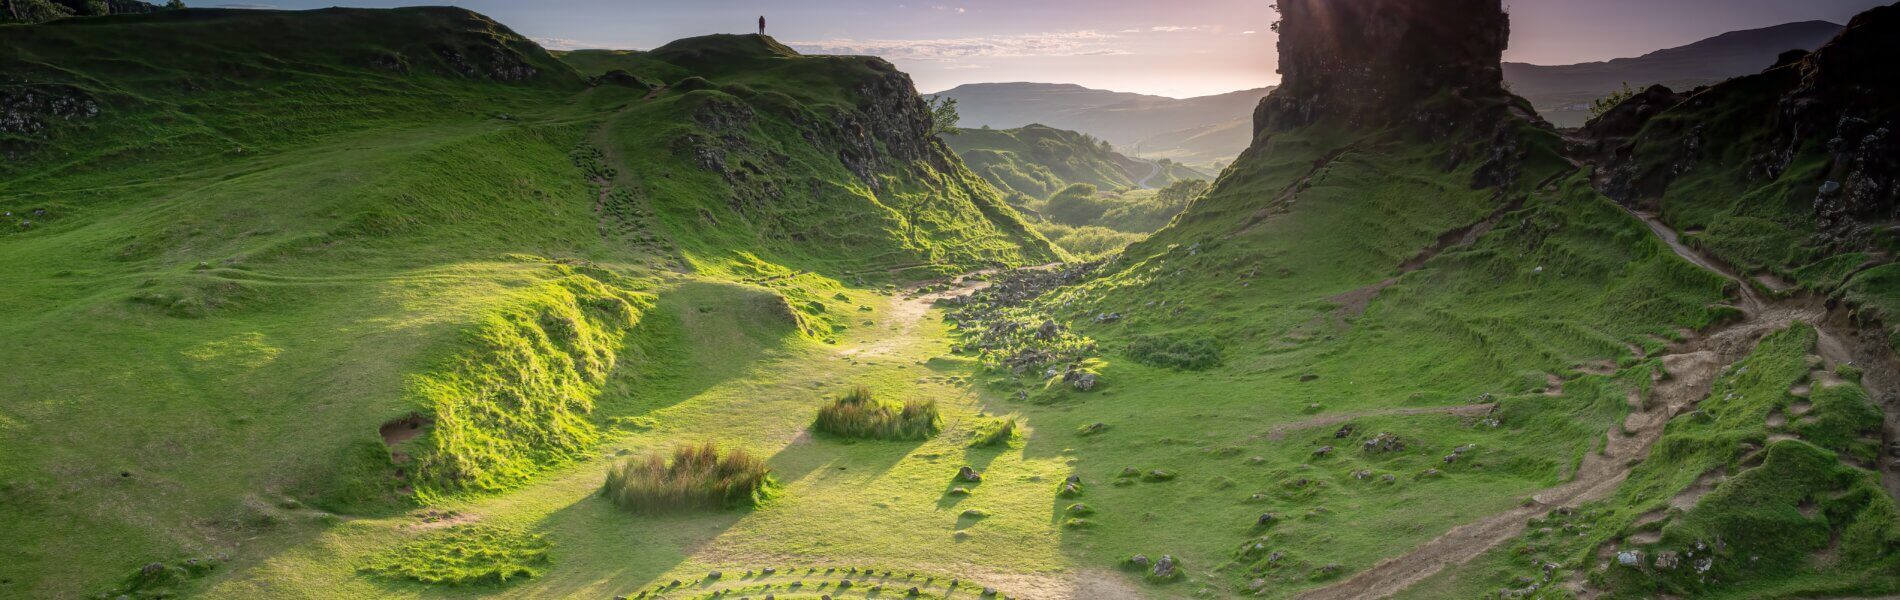 Fairy-tale,Landscape,,The,Fairy,Glen,,Isle,Of,Skye,,Scotland